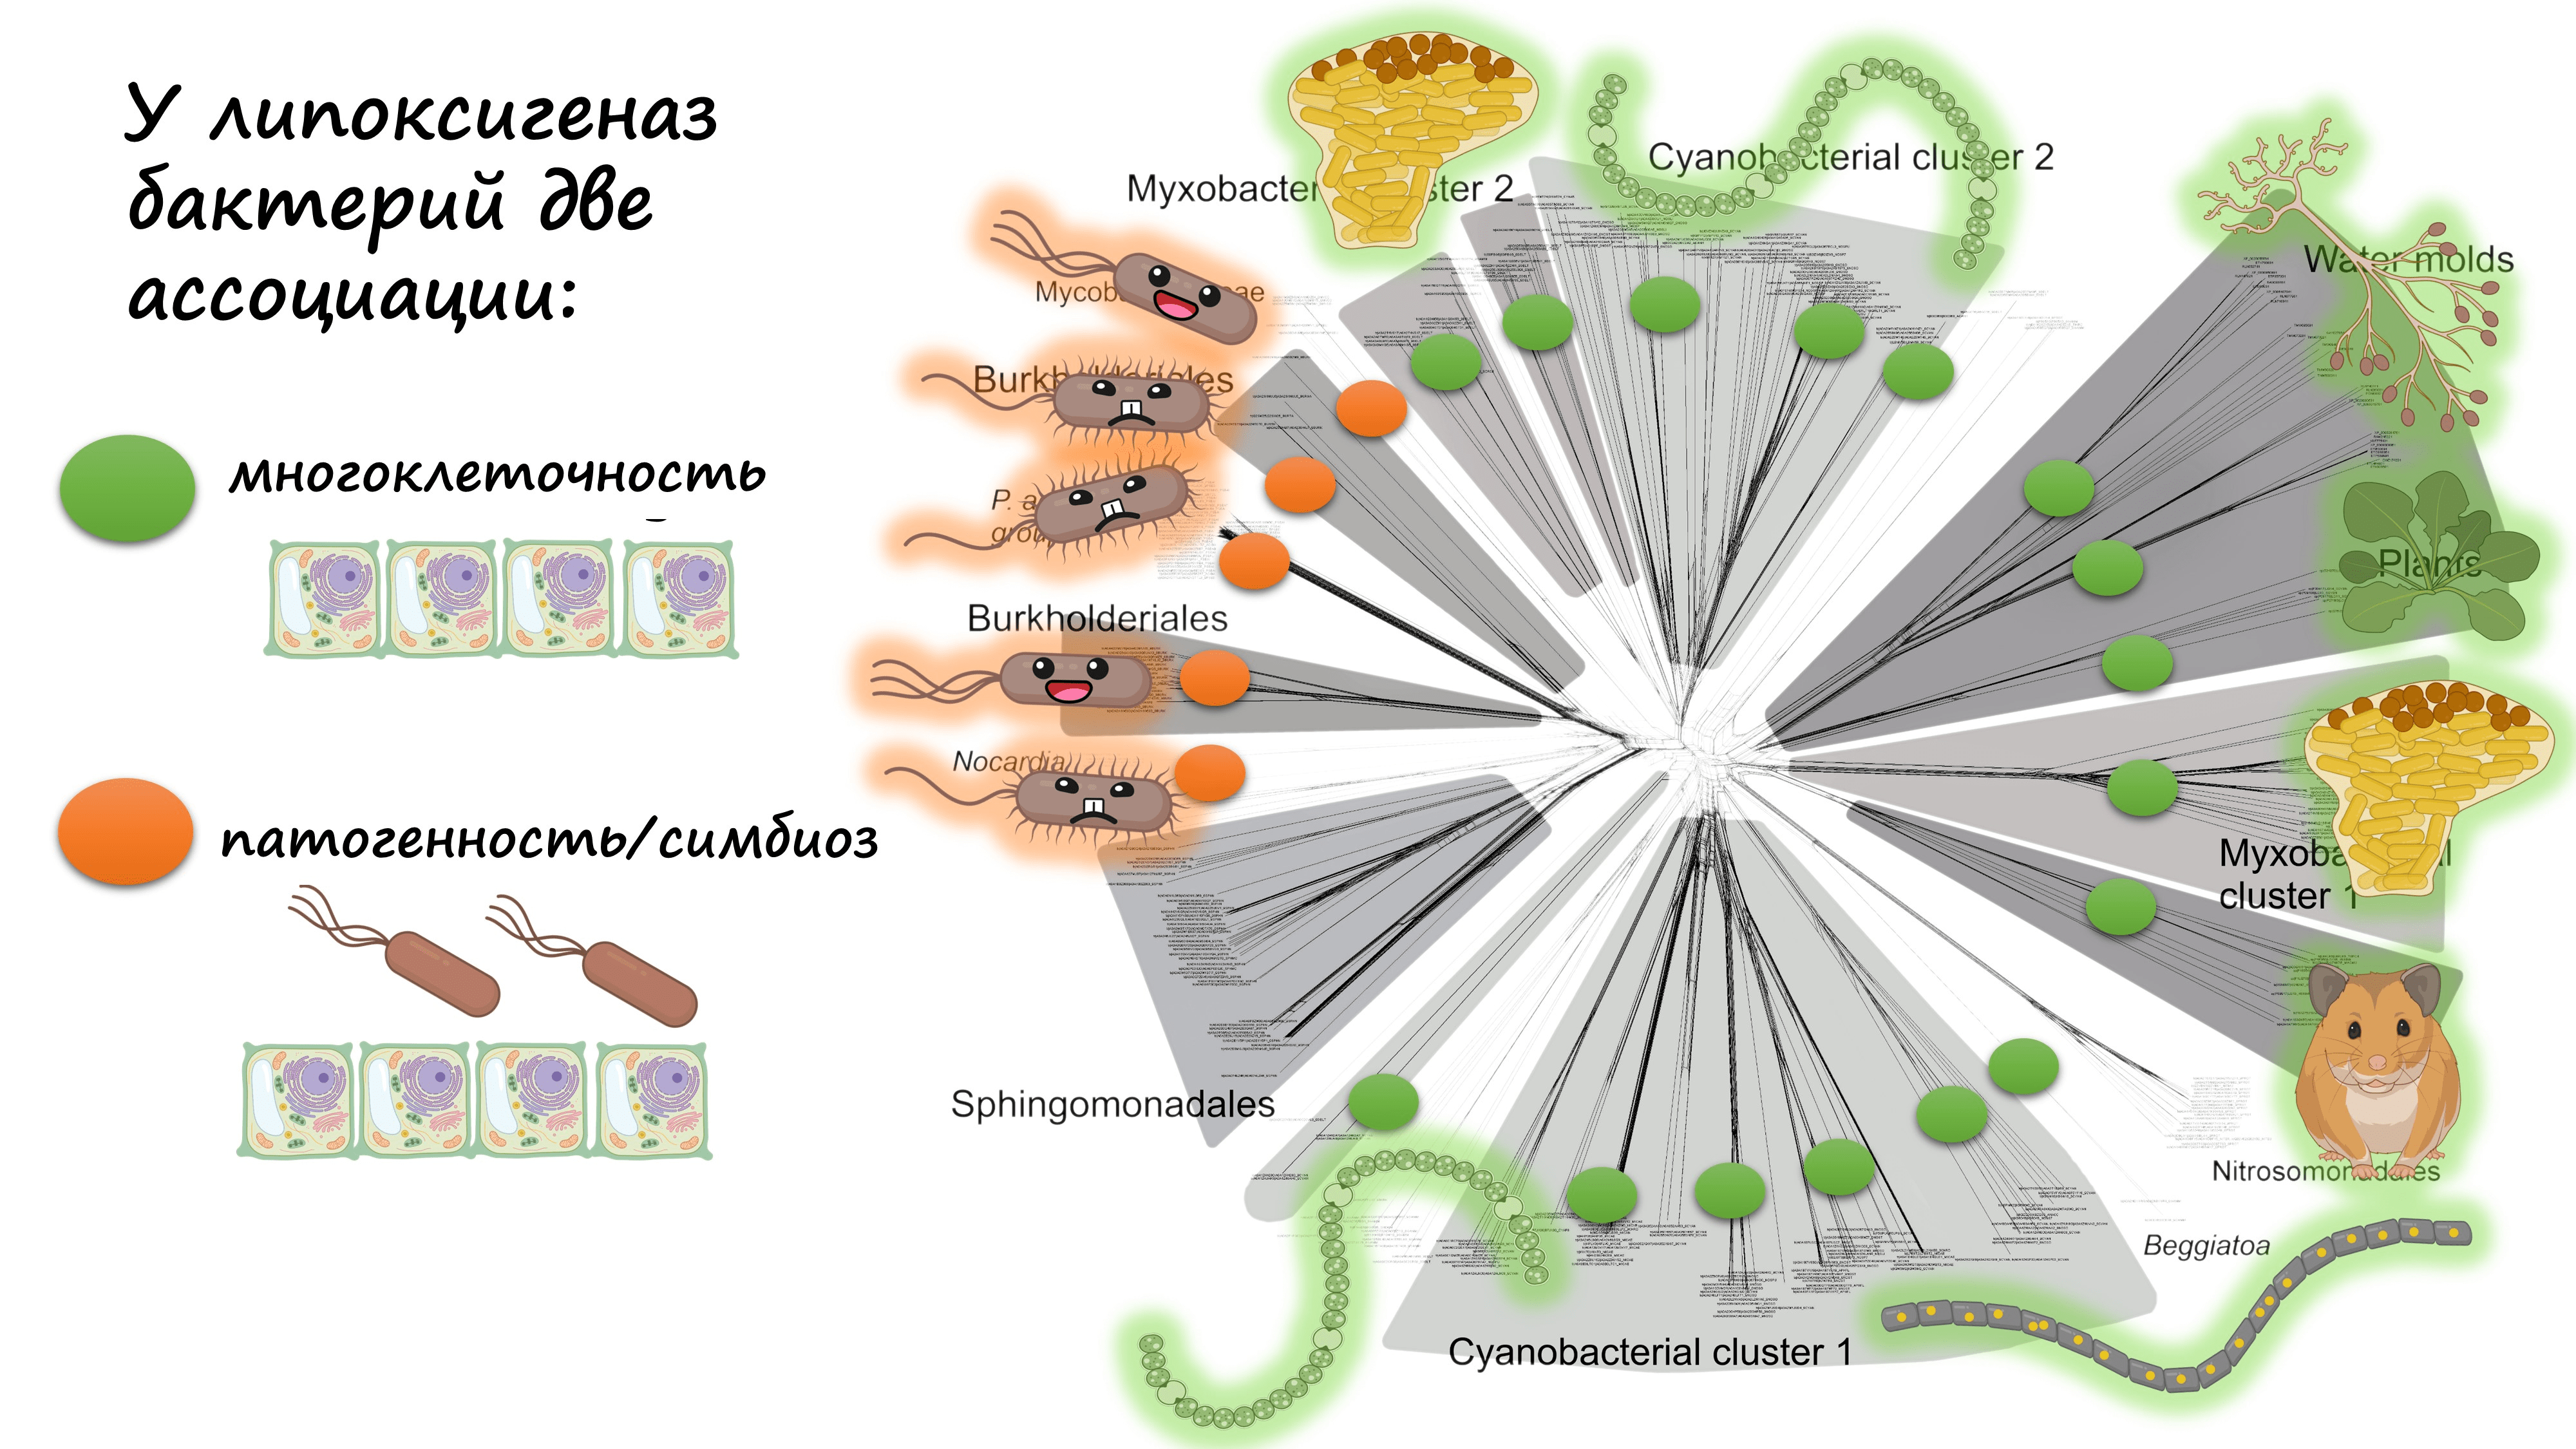 Эволюционная сеть липоксигеназ бактерий и некоторых эукариот